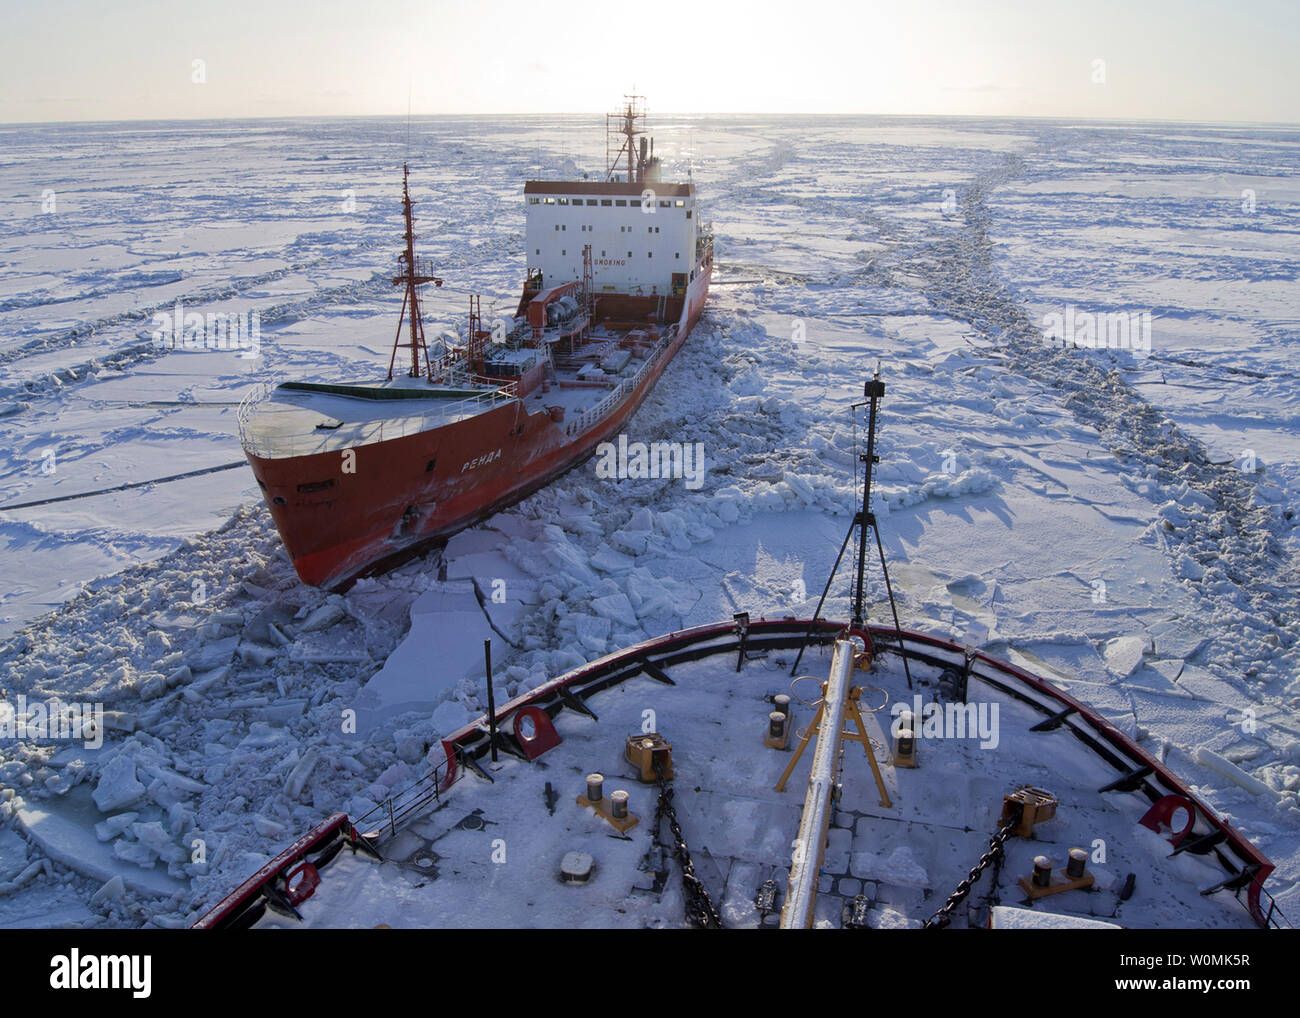 La petroliera russa renda siede nel ghiaccio come NEGLI STATI UNITI Guardacoste Healy rompe il ghiaccio circa 250 miglia a sud di nome, Alaska nel mare di Bering su Gennaio 6, 2012. Le navi sono in transito attraverso il ghiaccio fino a cinque metri di spessore in questa zona. La petroliera renda sta portando 1.3 milioni di galloni di carburante per il nome, come la città non ha ricevuto il suo ultimo invernali pre-imbarco a causa di tempeste. UPI/STATI UNITI Coast Guard Foto Stock